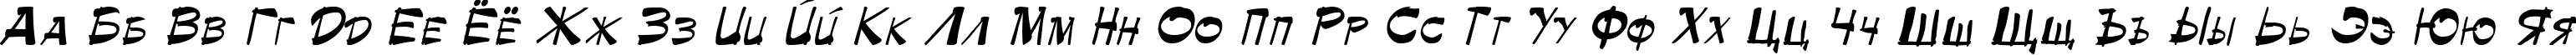 Пример написания русского алфавита шрифтом Palette